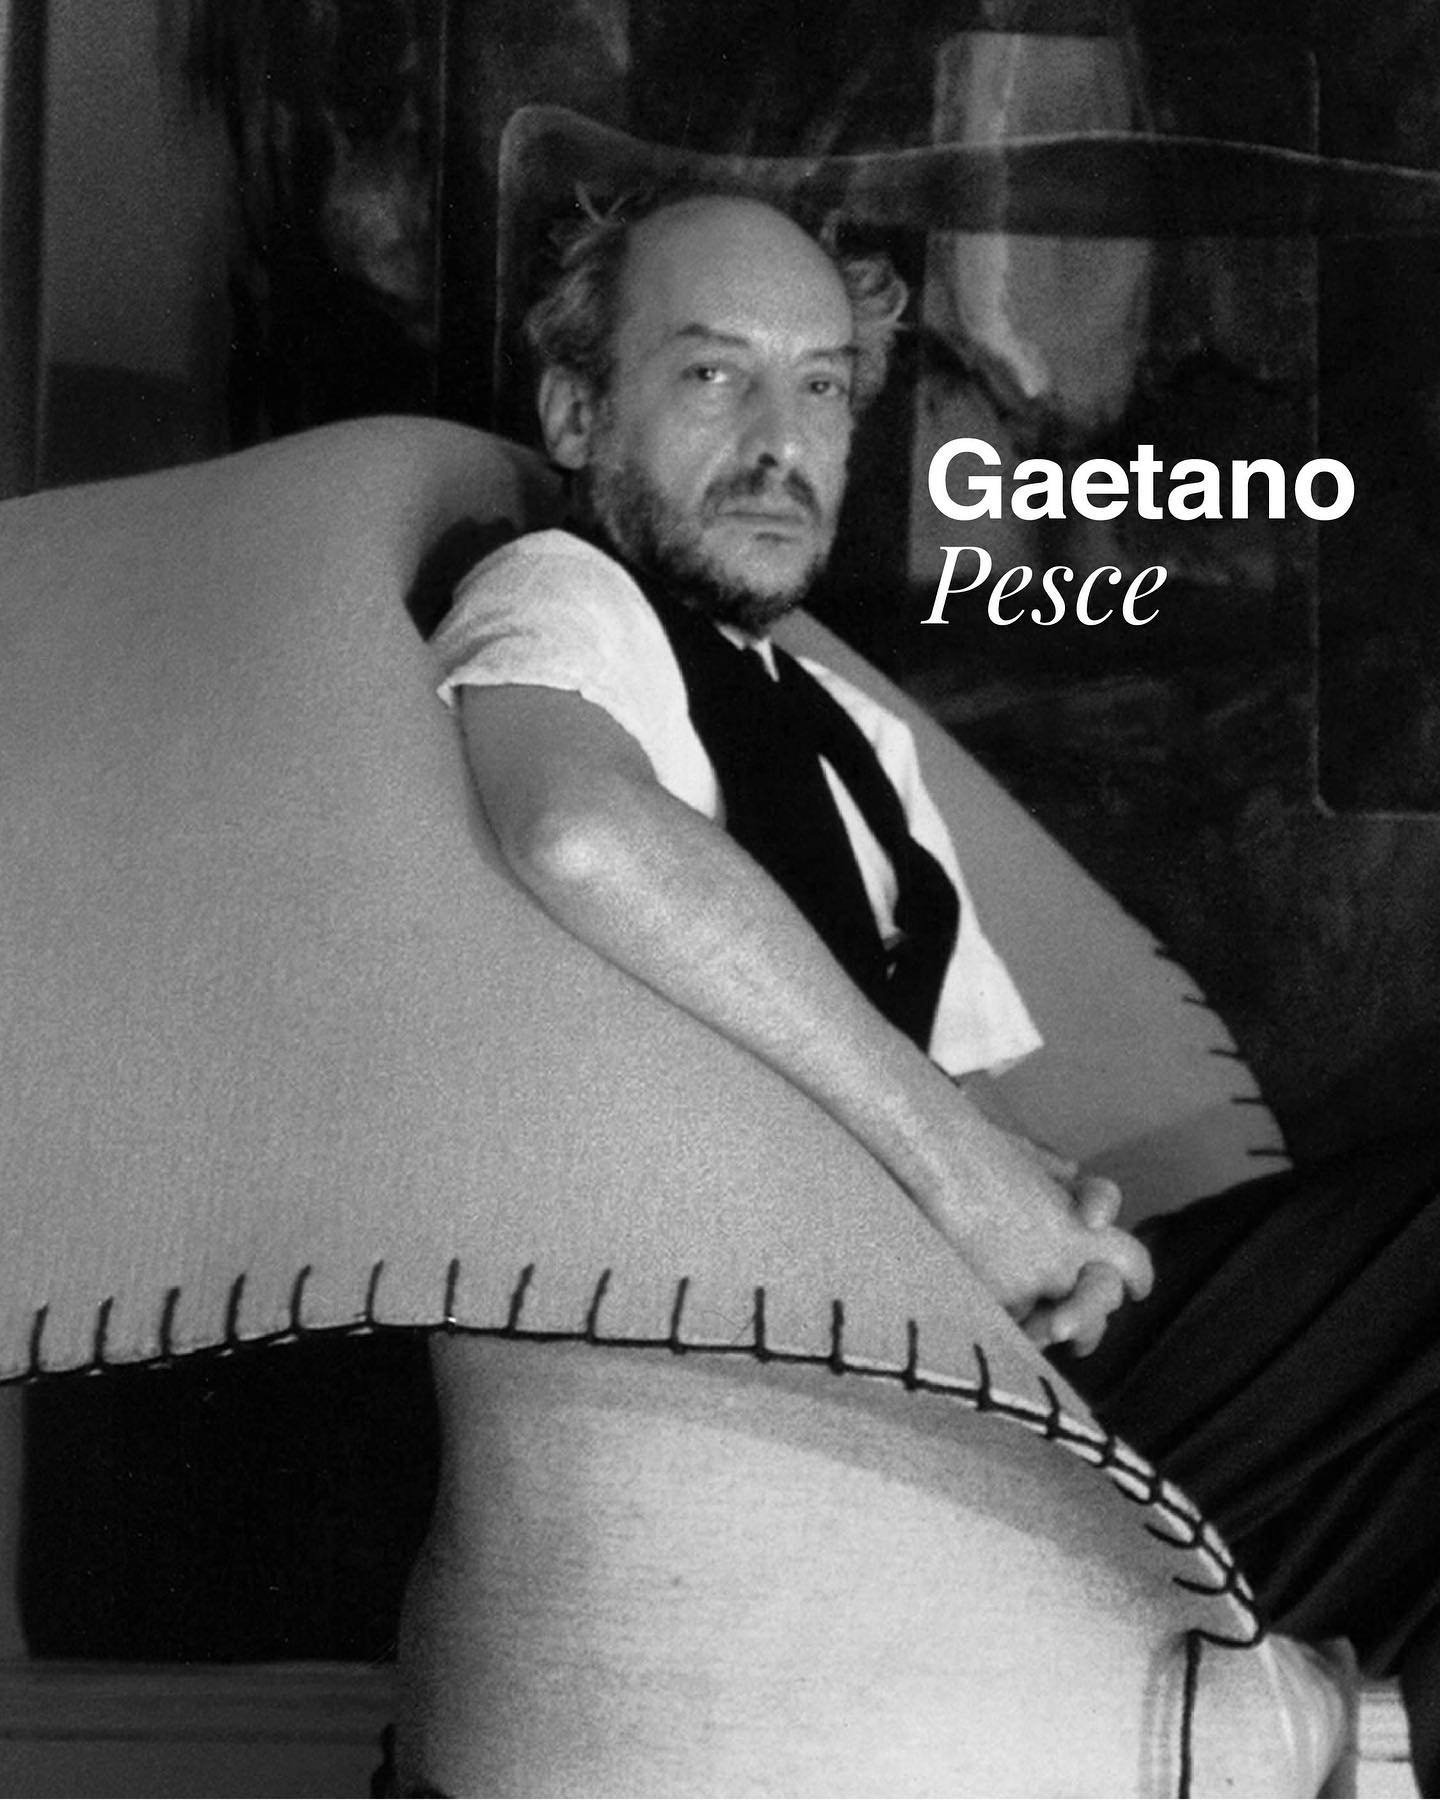 A un mes del fallecimiento de Gaetano Pesce, honramos su vida y obra

Pesce fue un pionero del dise&ntilde;o radical y un referente para las nuevas generaciones de dise&ntilde;adores. Su trabajo sigue siendo relevante por su mensaje social, su creati